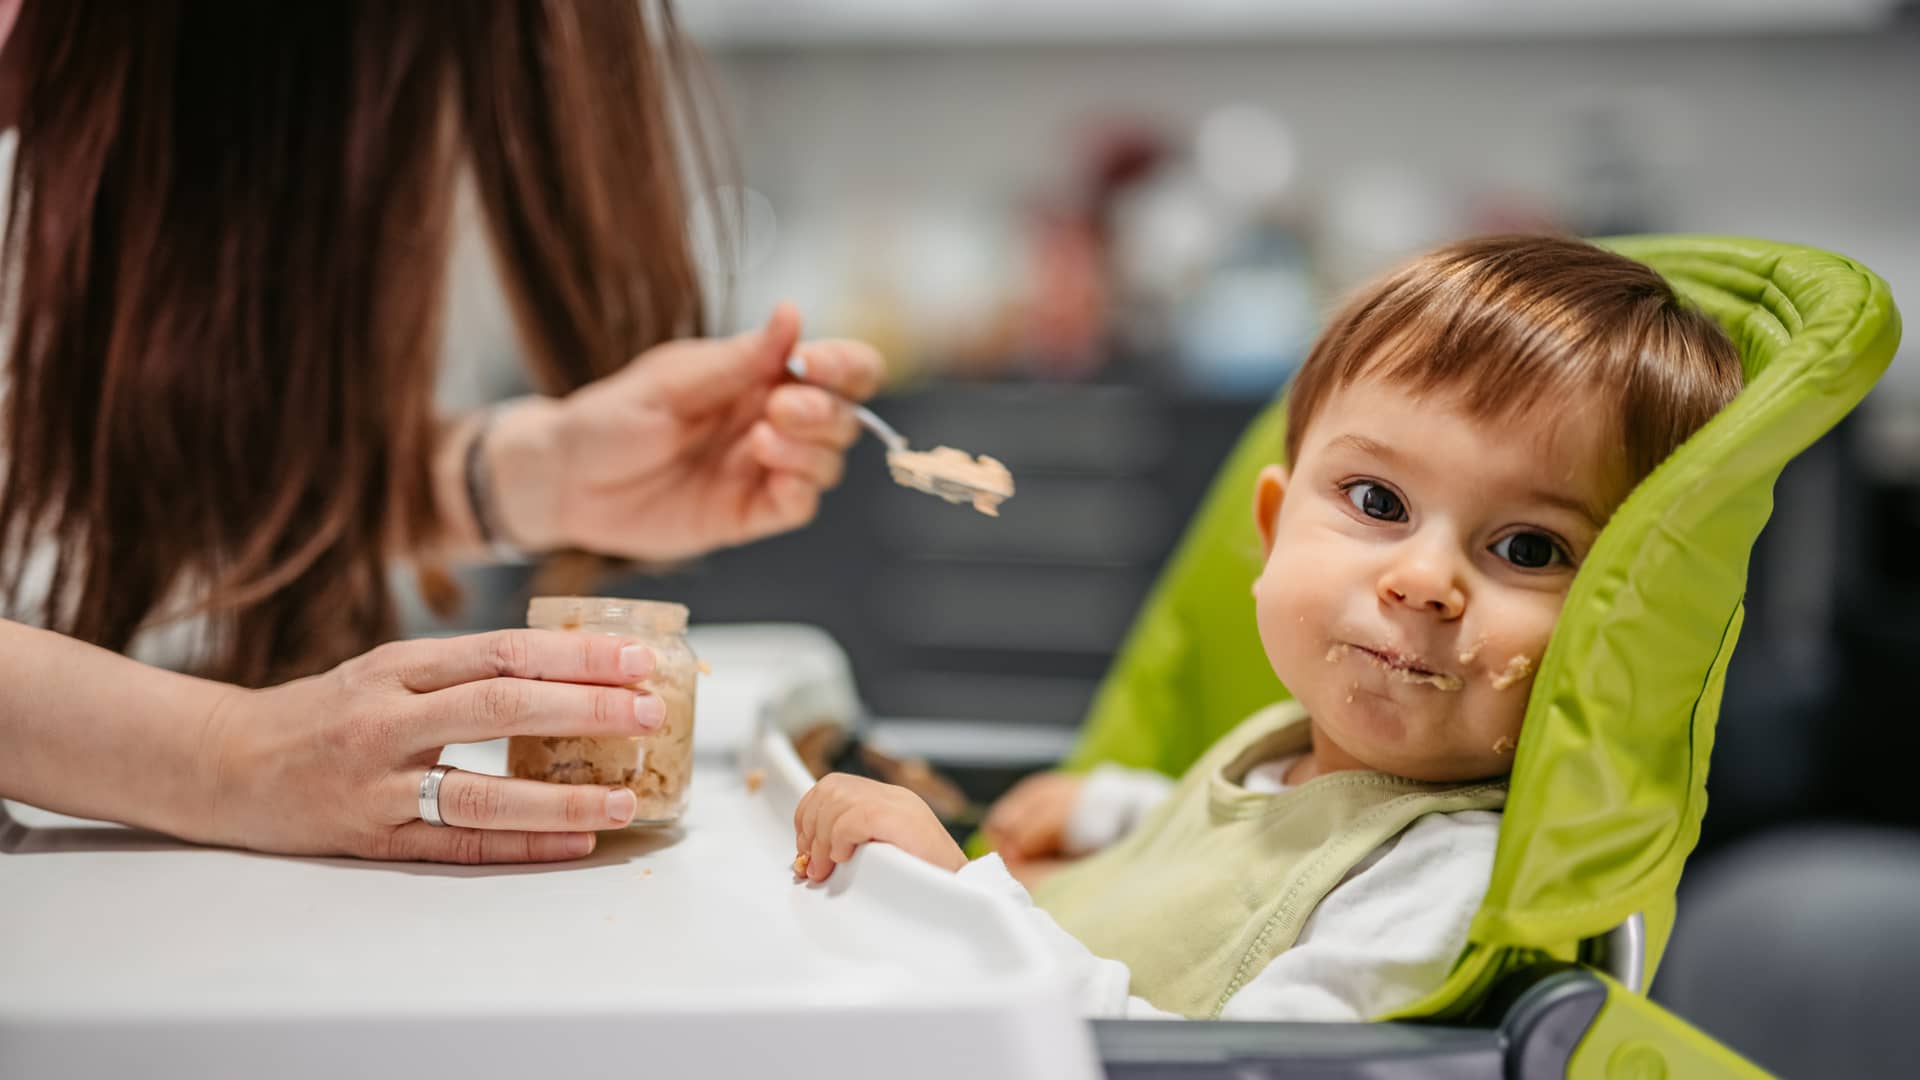 Niño pequeño mirando a cámara mientras su madre le da de comer un potito casero con diicultad, hablaremos de la alimentación infantil apropiada para cada edad